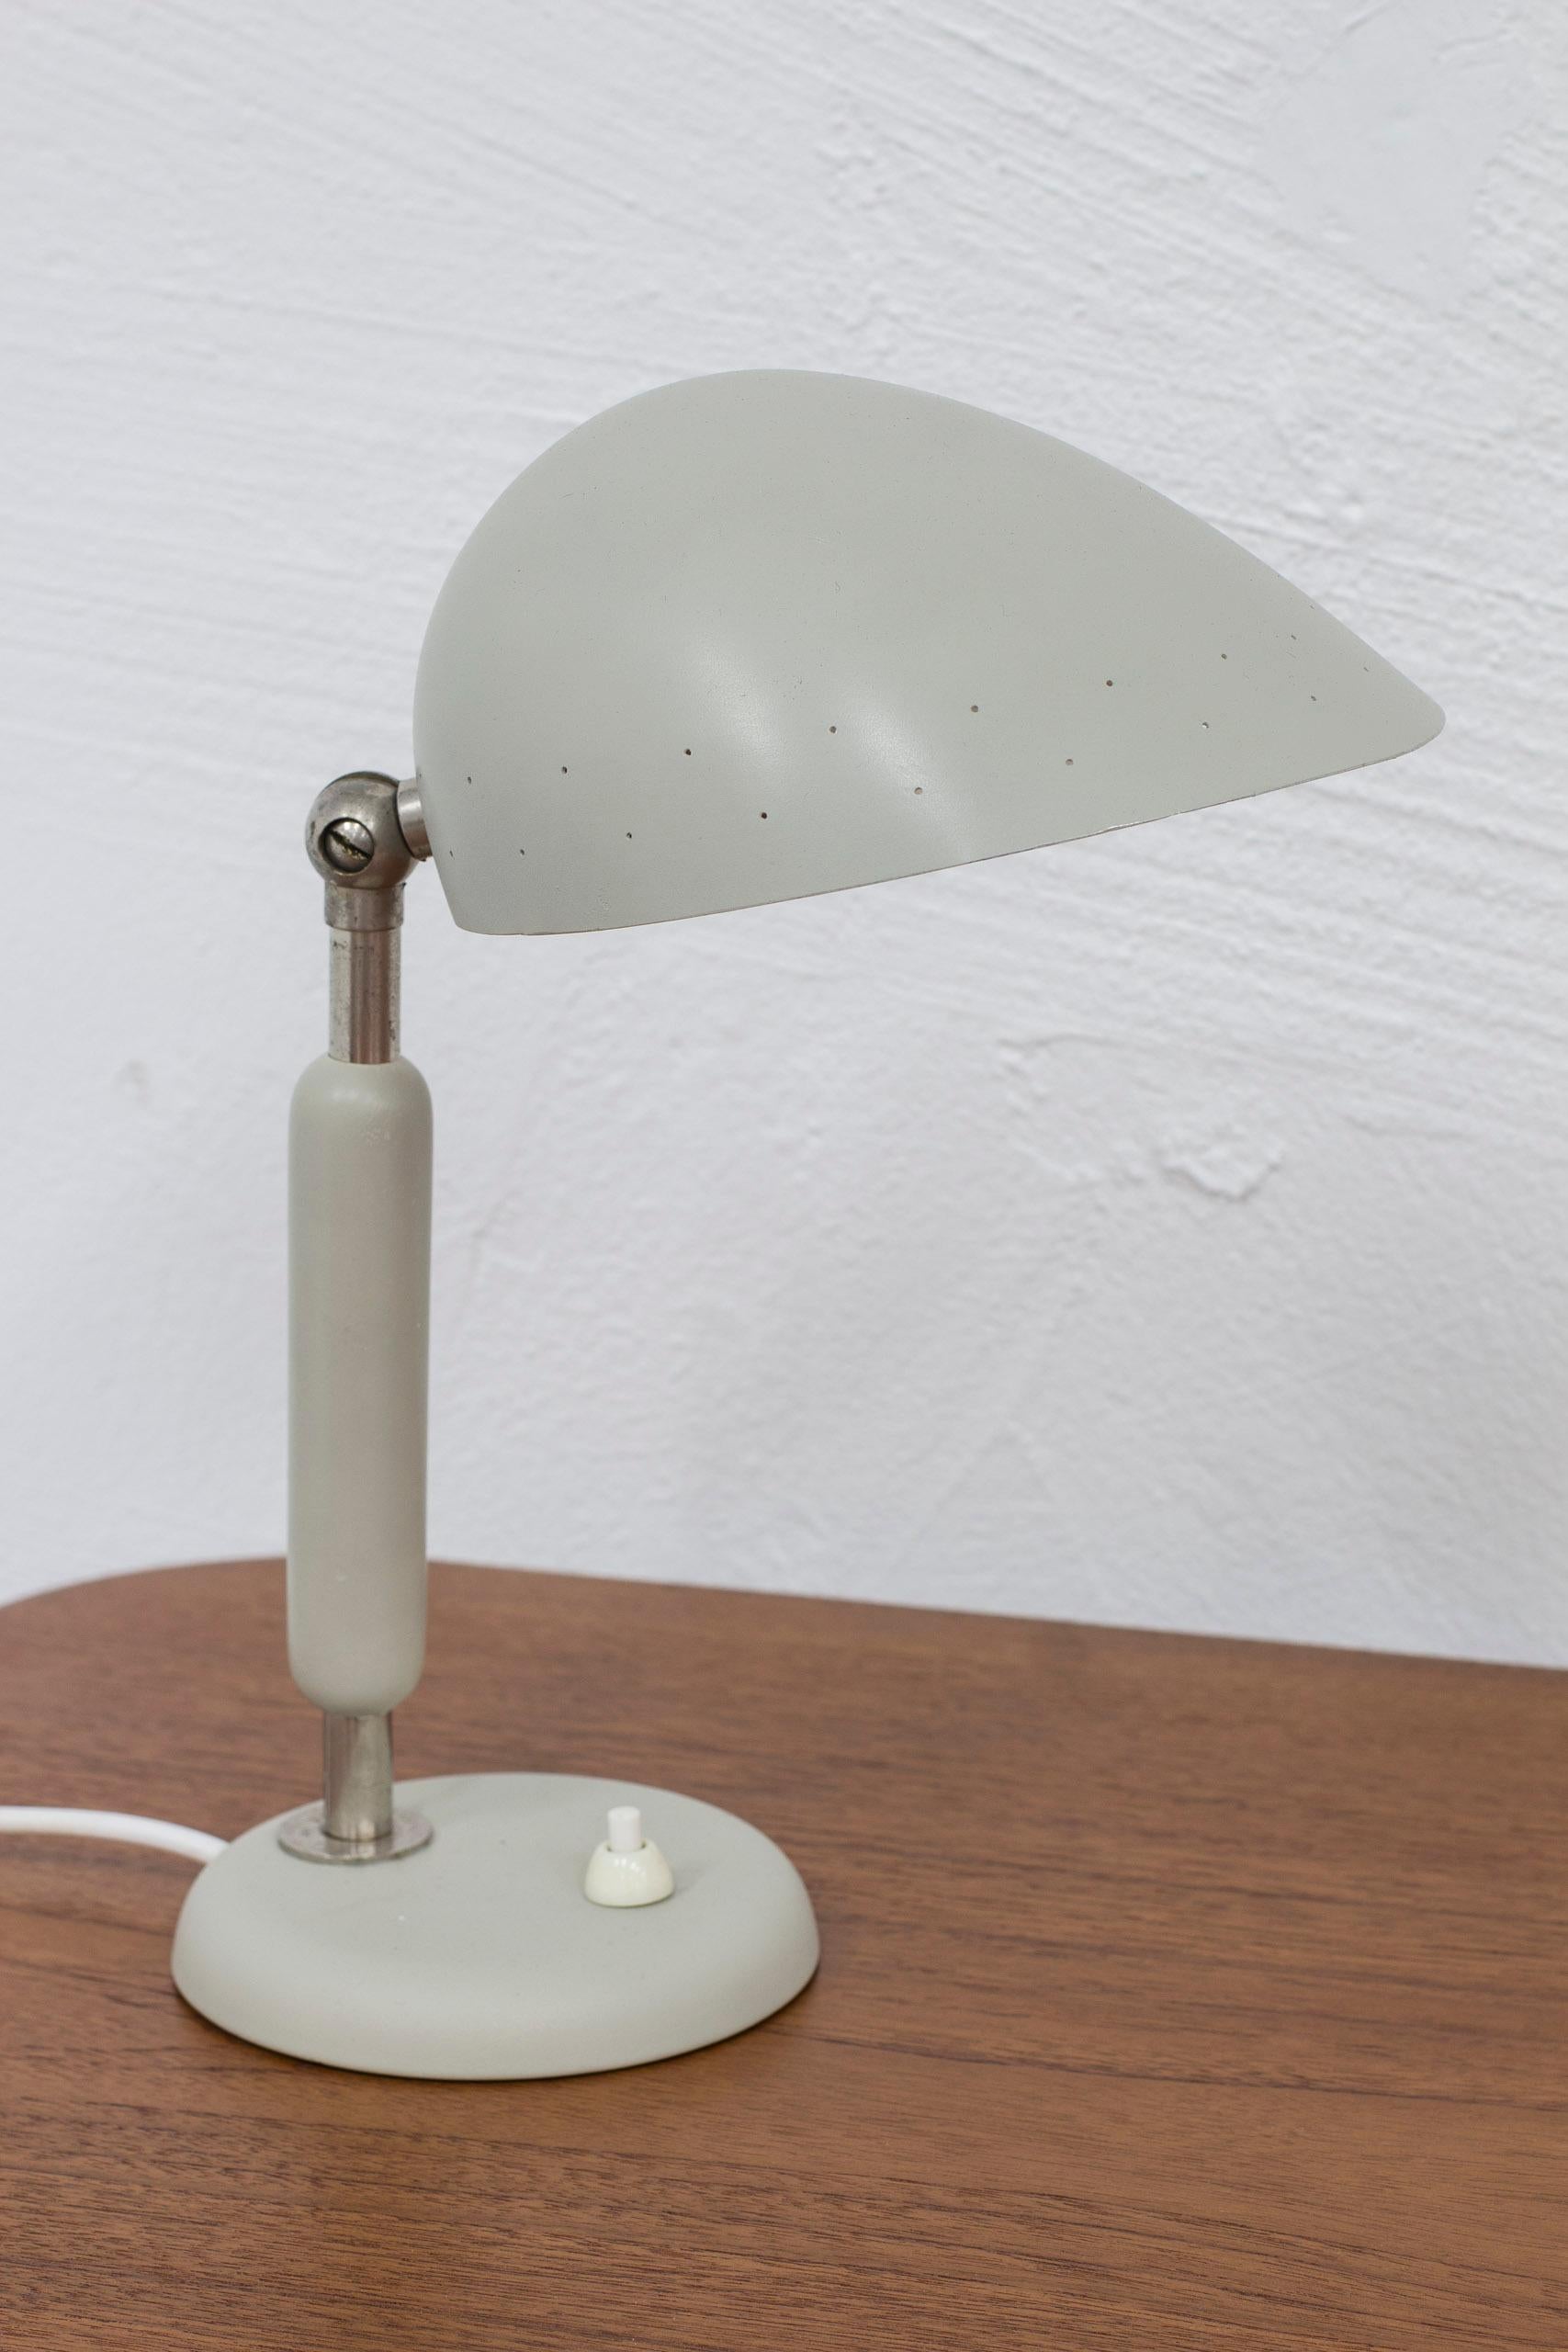 Lampe de table conçue par Harald Notini. Produit à Stockholmn, Suède par Böhlmarks lampfabrik dans les années 1940-50. Fabriqué en métal nickelé, en bois laqué et en aluminium. Interrupteur de la base en état de marche. Abat-jour réglable. Bon état